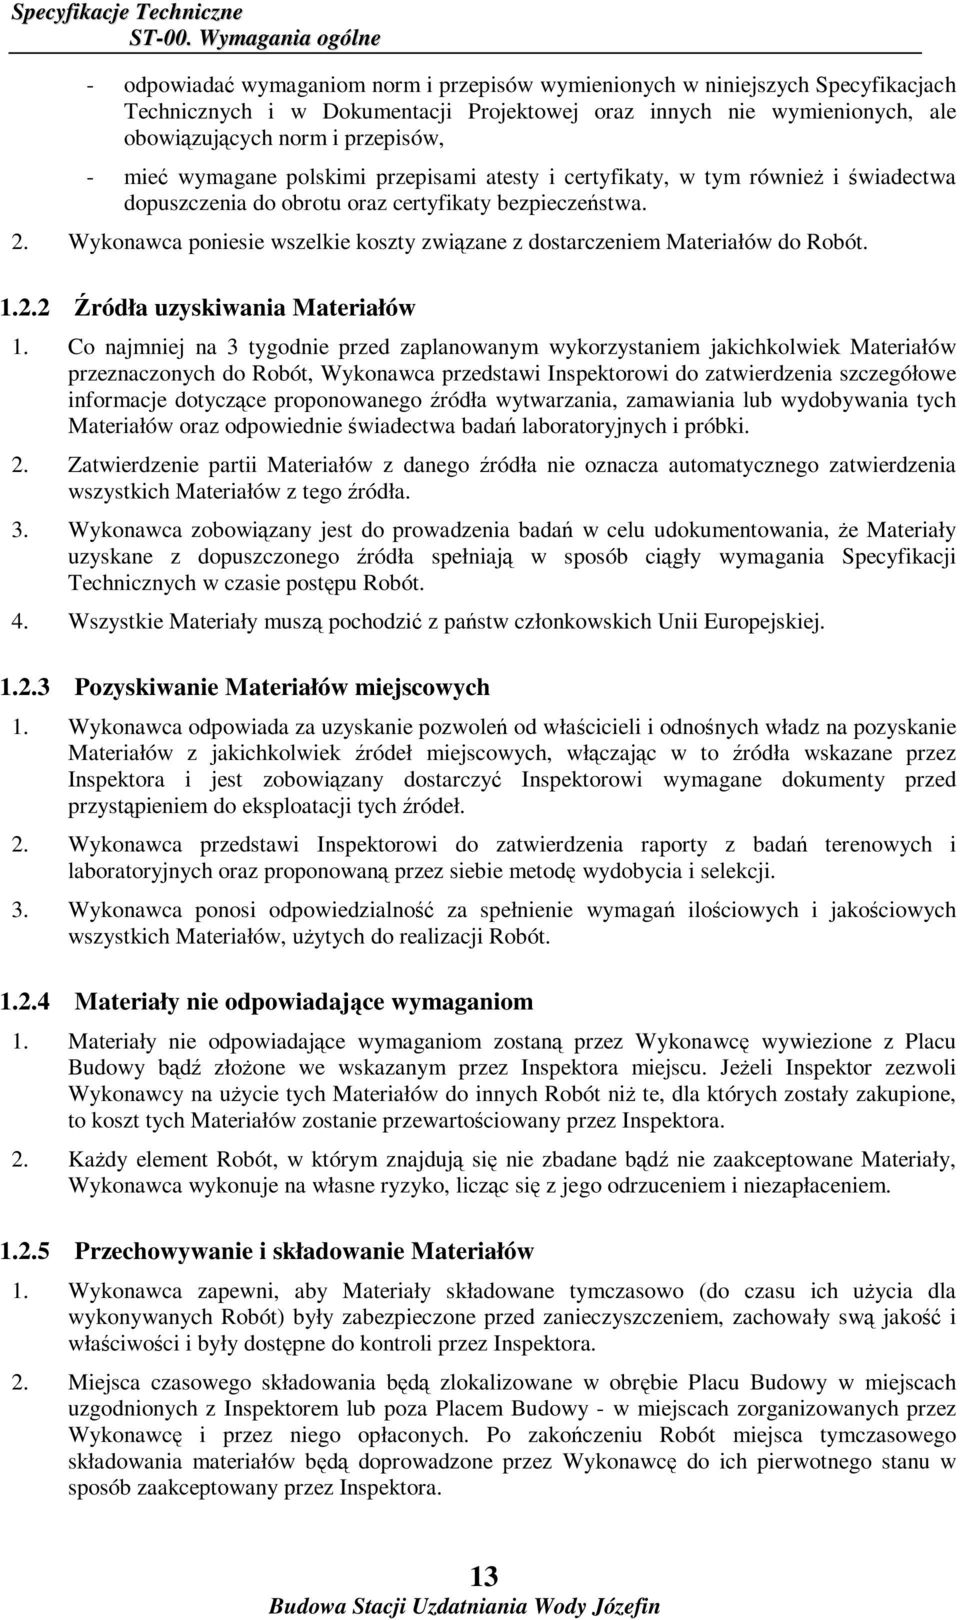 przepisów, - mieć wymagane polskimi przepisami atesty i certyfikaty, w tym równieŝ i świadectwa dopuszczenia do obrotu oraz certyfikaty bezpieczeństwa. 2.